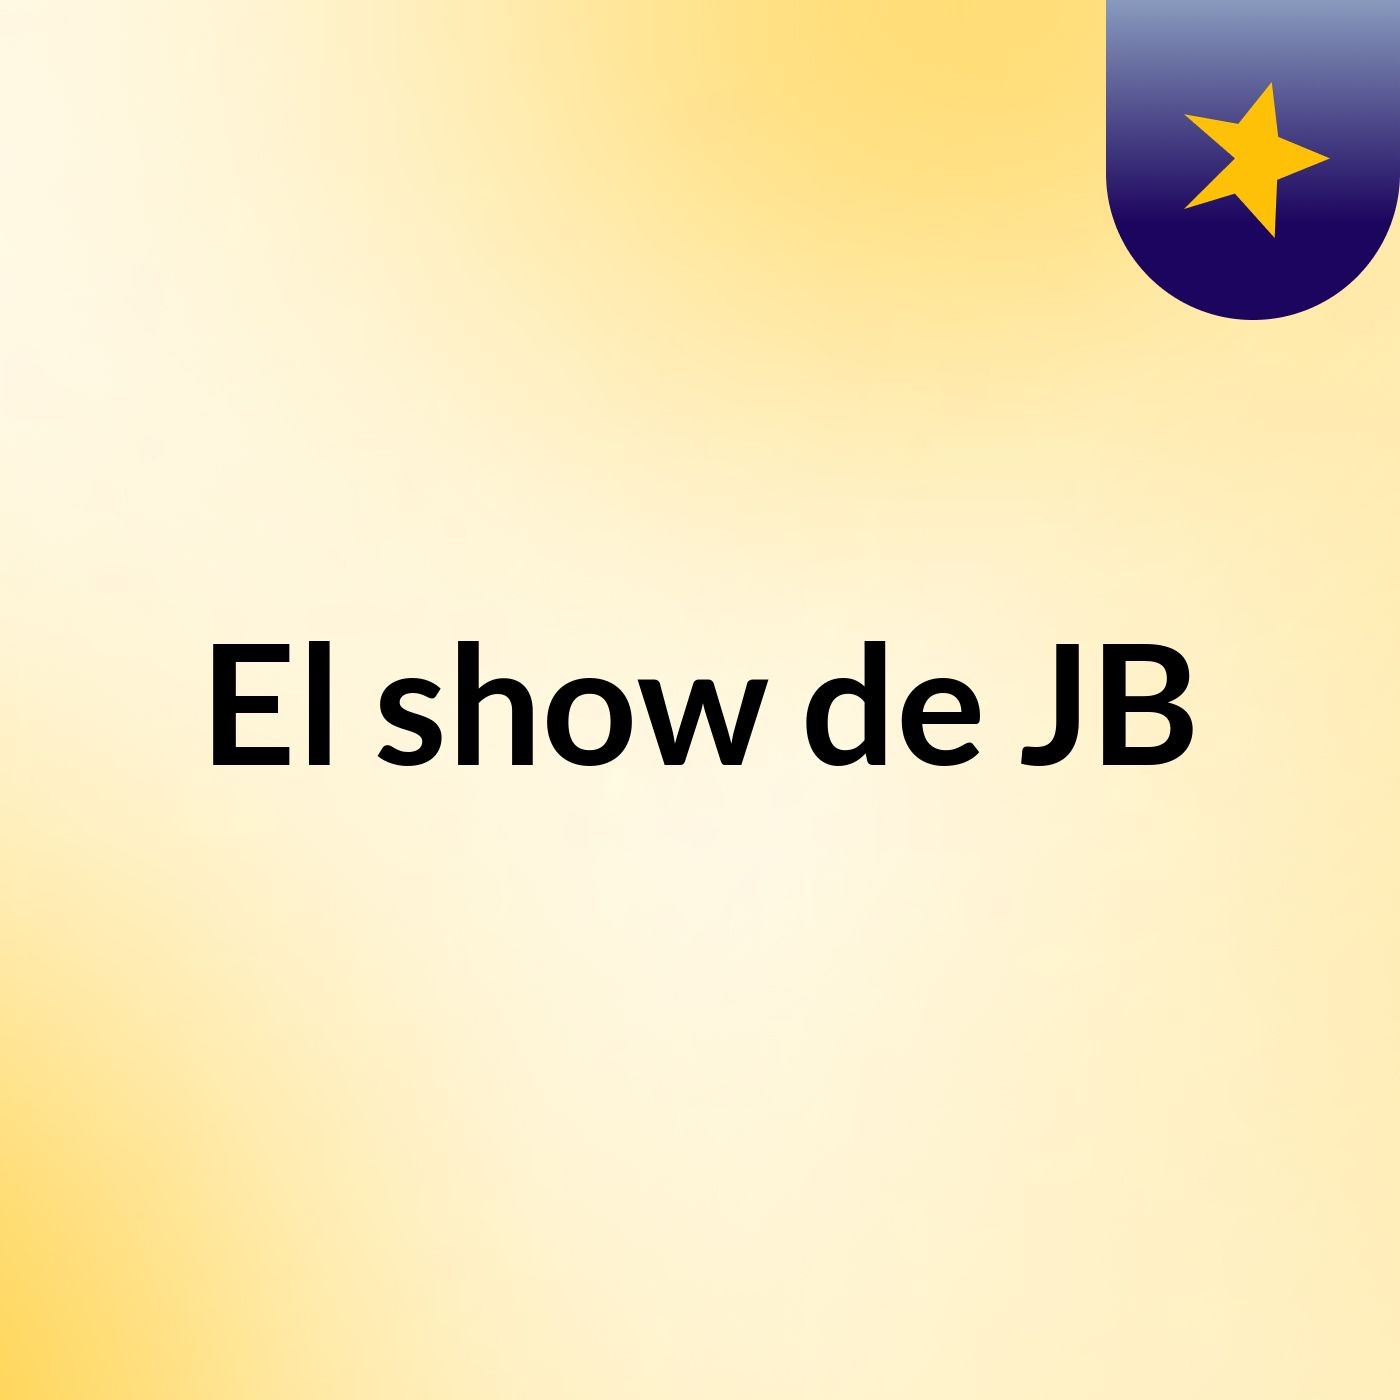 El show de JB